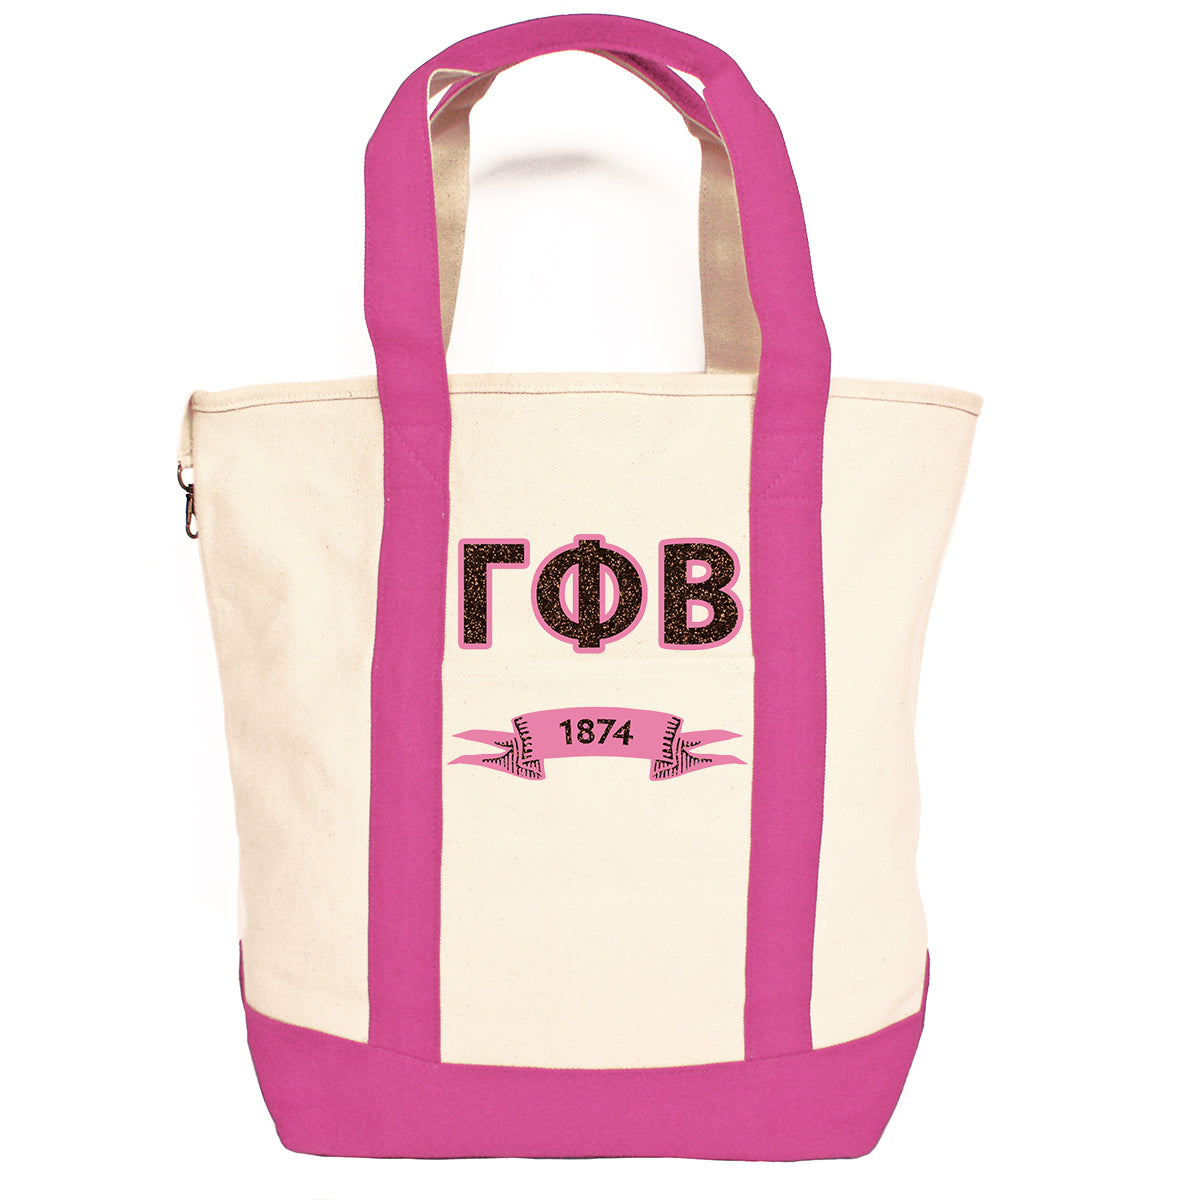 Gamma Phi Beta Comfort Colors Tote Bag | Brit and Bee